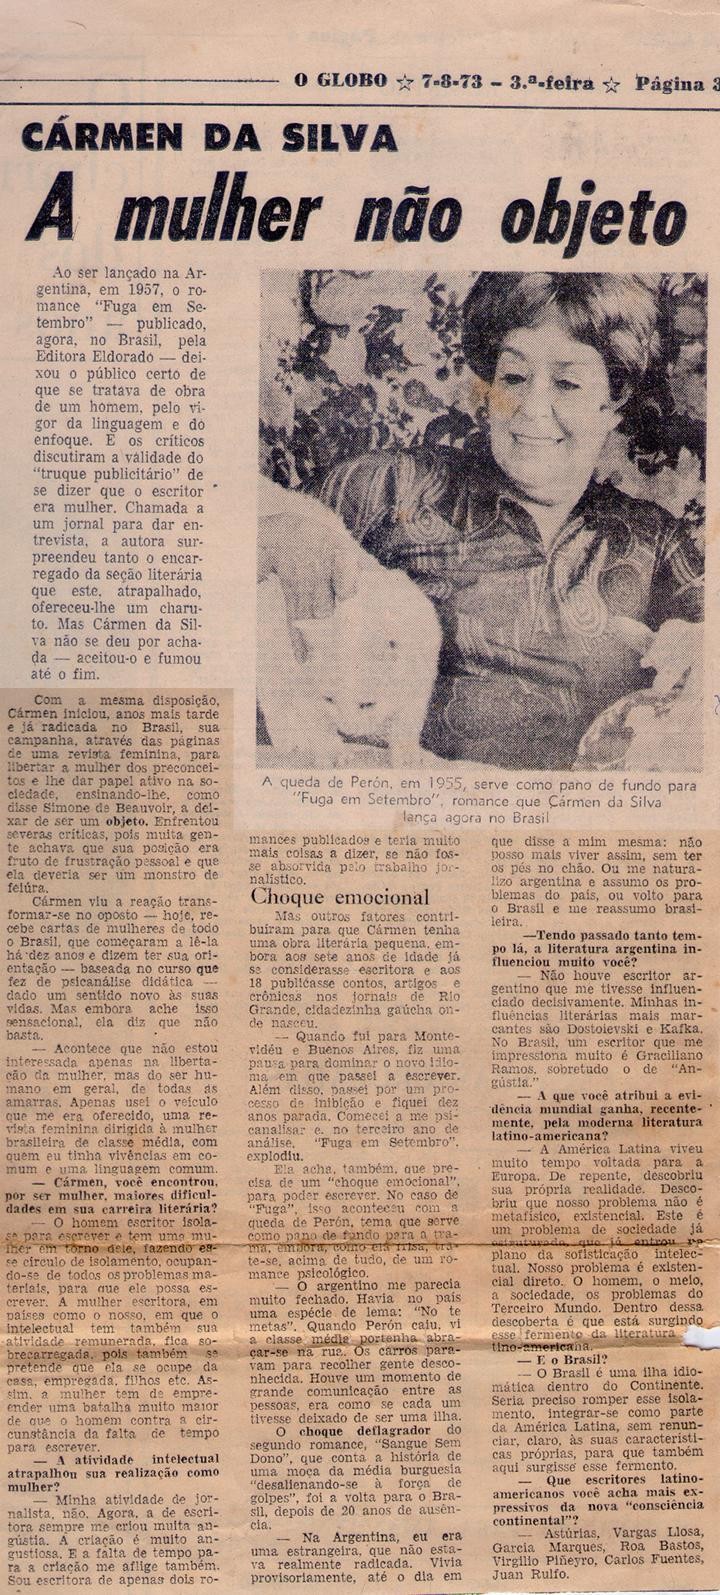 07 de Agosto de 1973 - O Globo. A mulher não objeto.